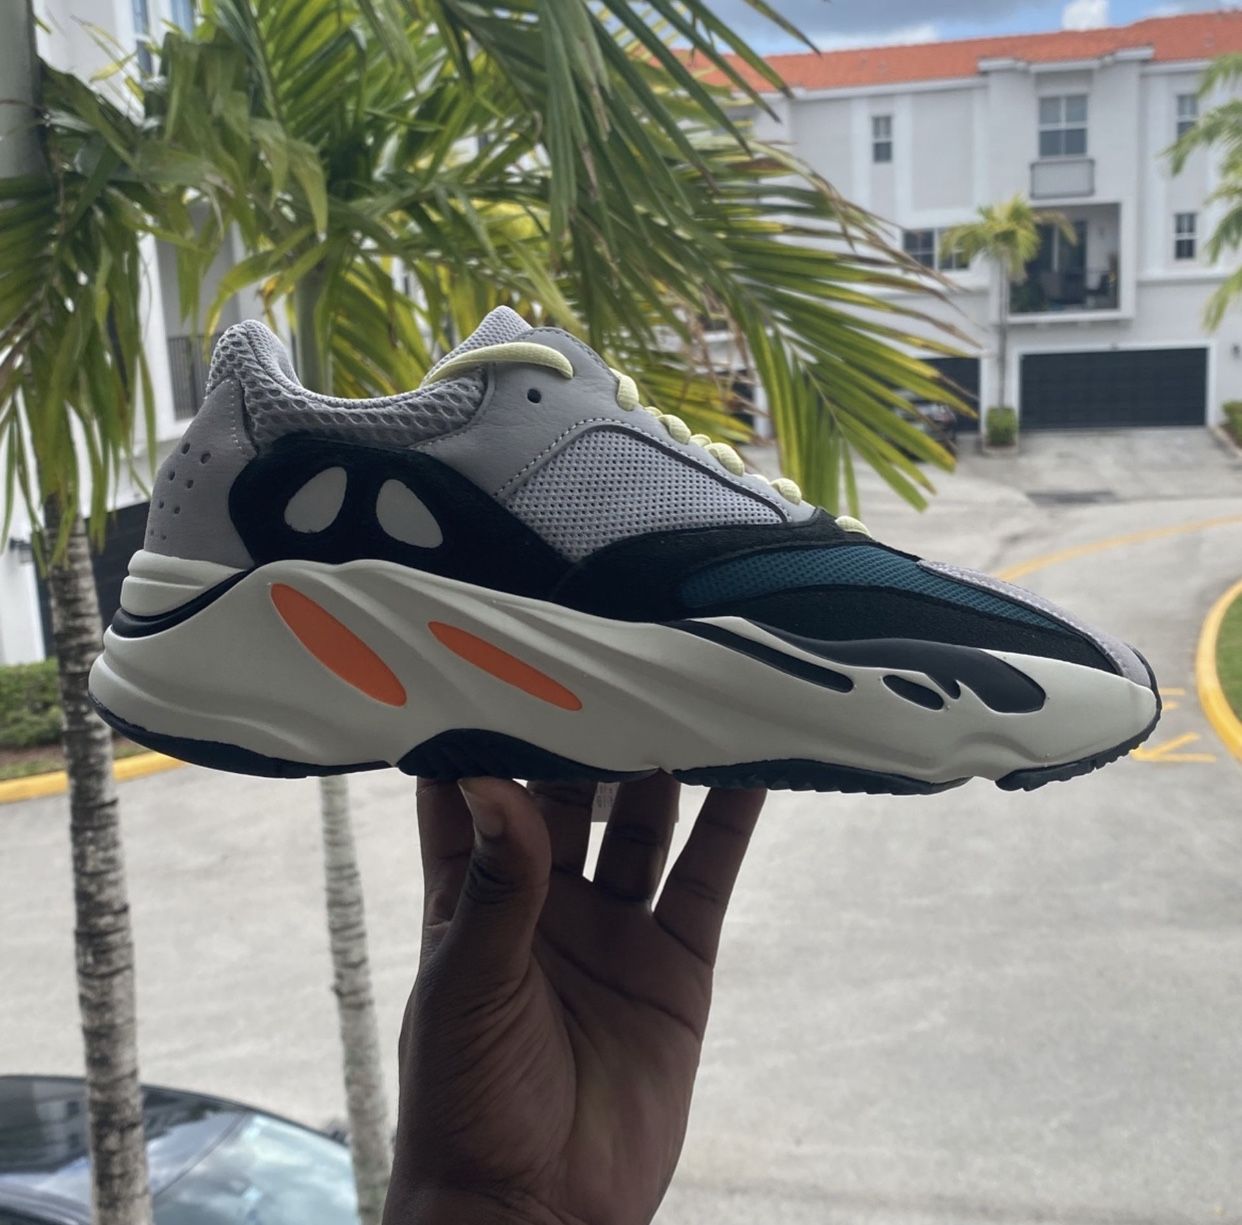 Adidas Men's Yeezy Boost 700 Wave Runner Sneakers